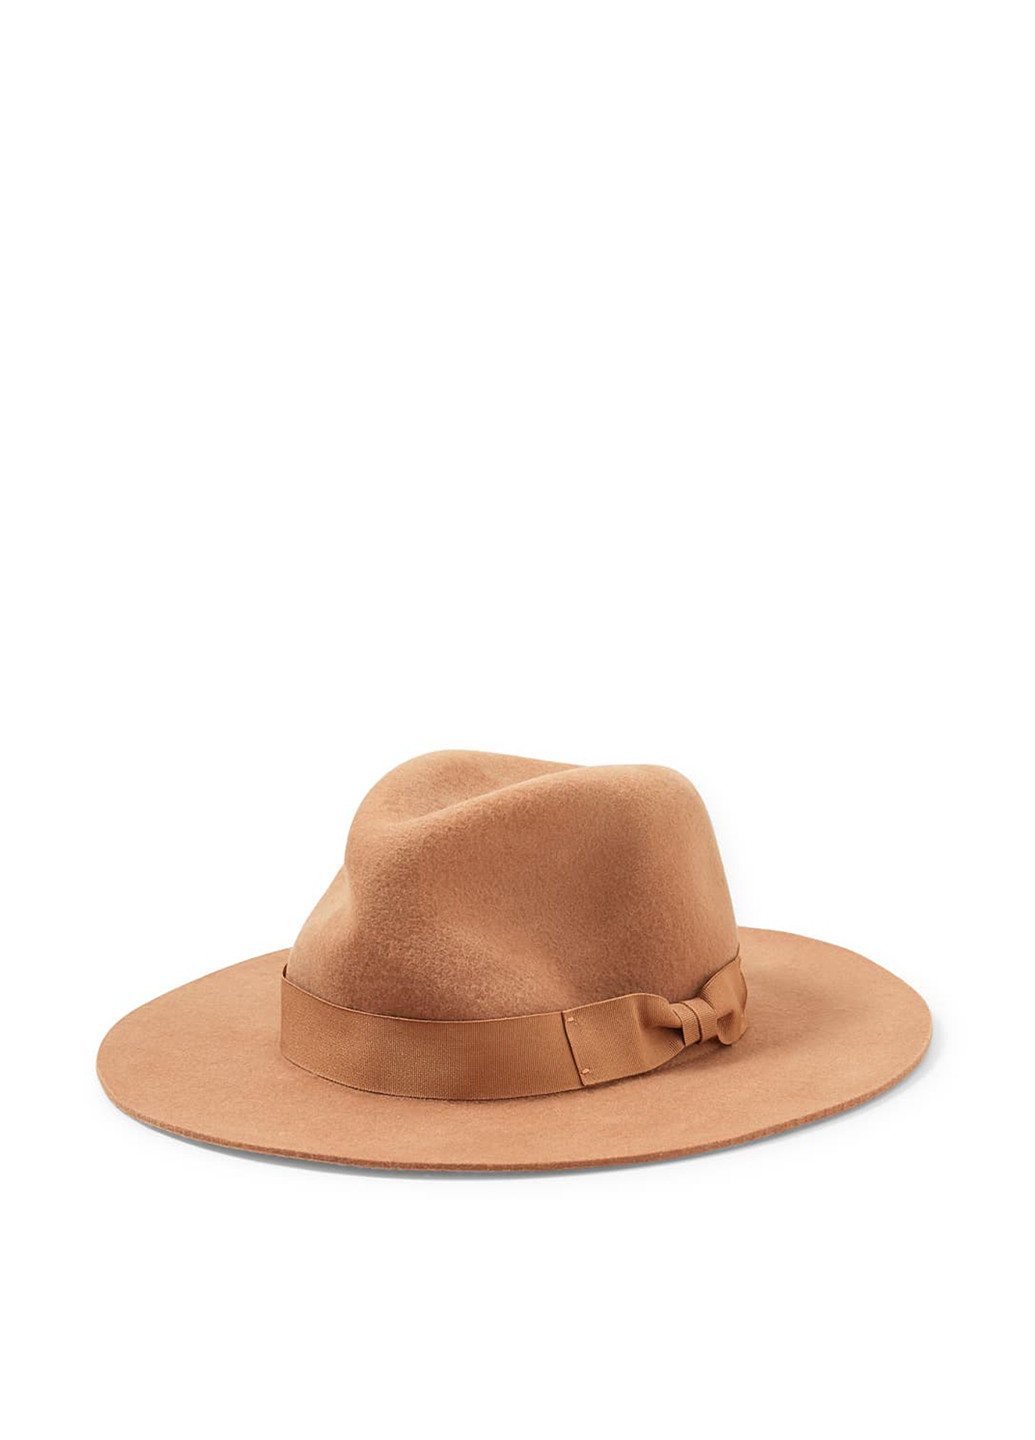 Шляпа C&A федора однотонная светло-коричневая кэжуал шерсть